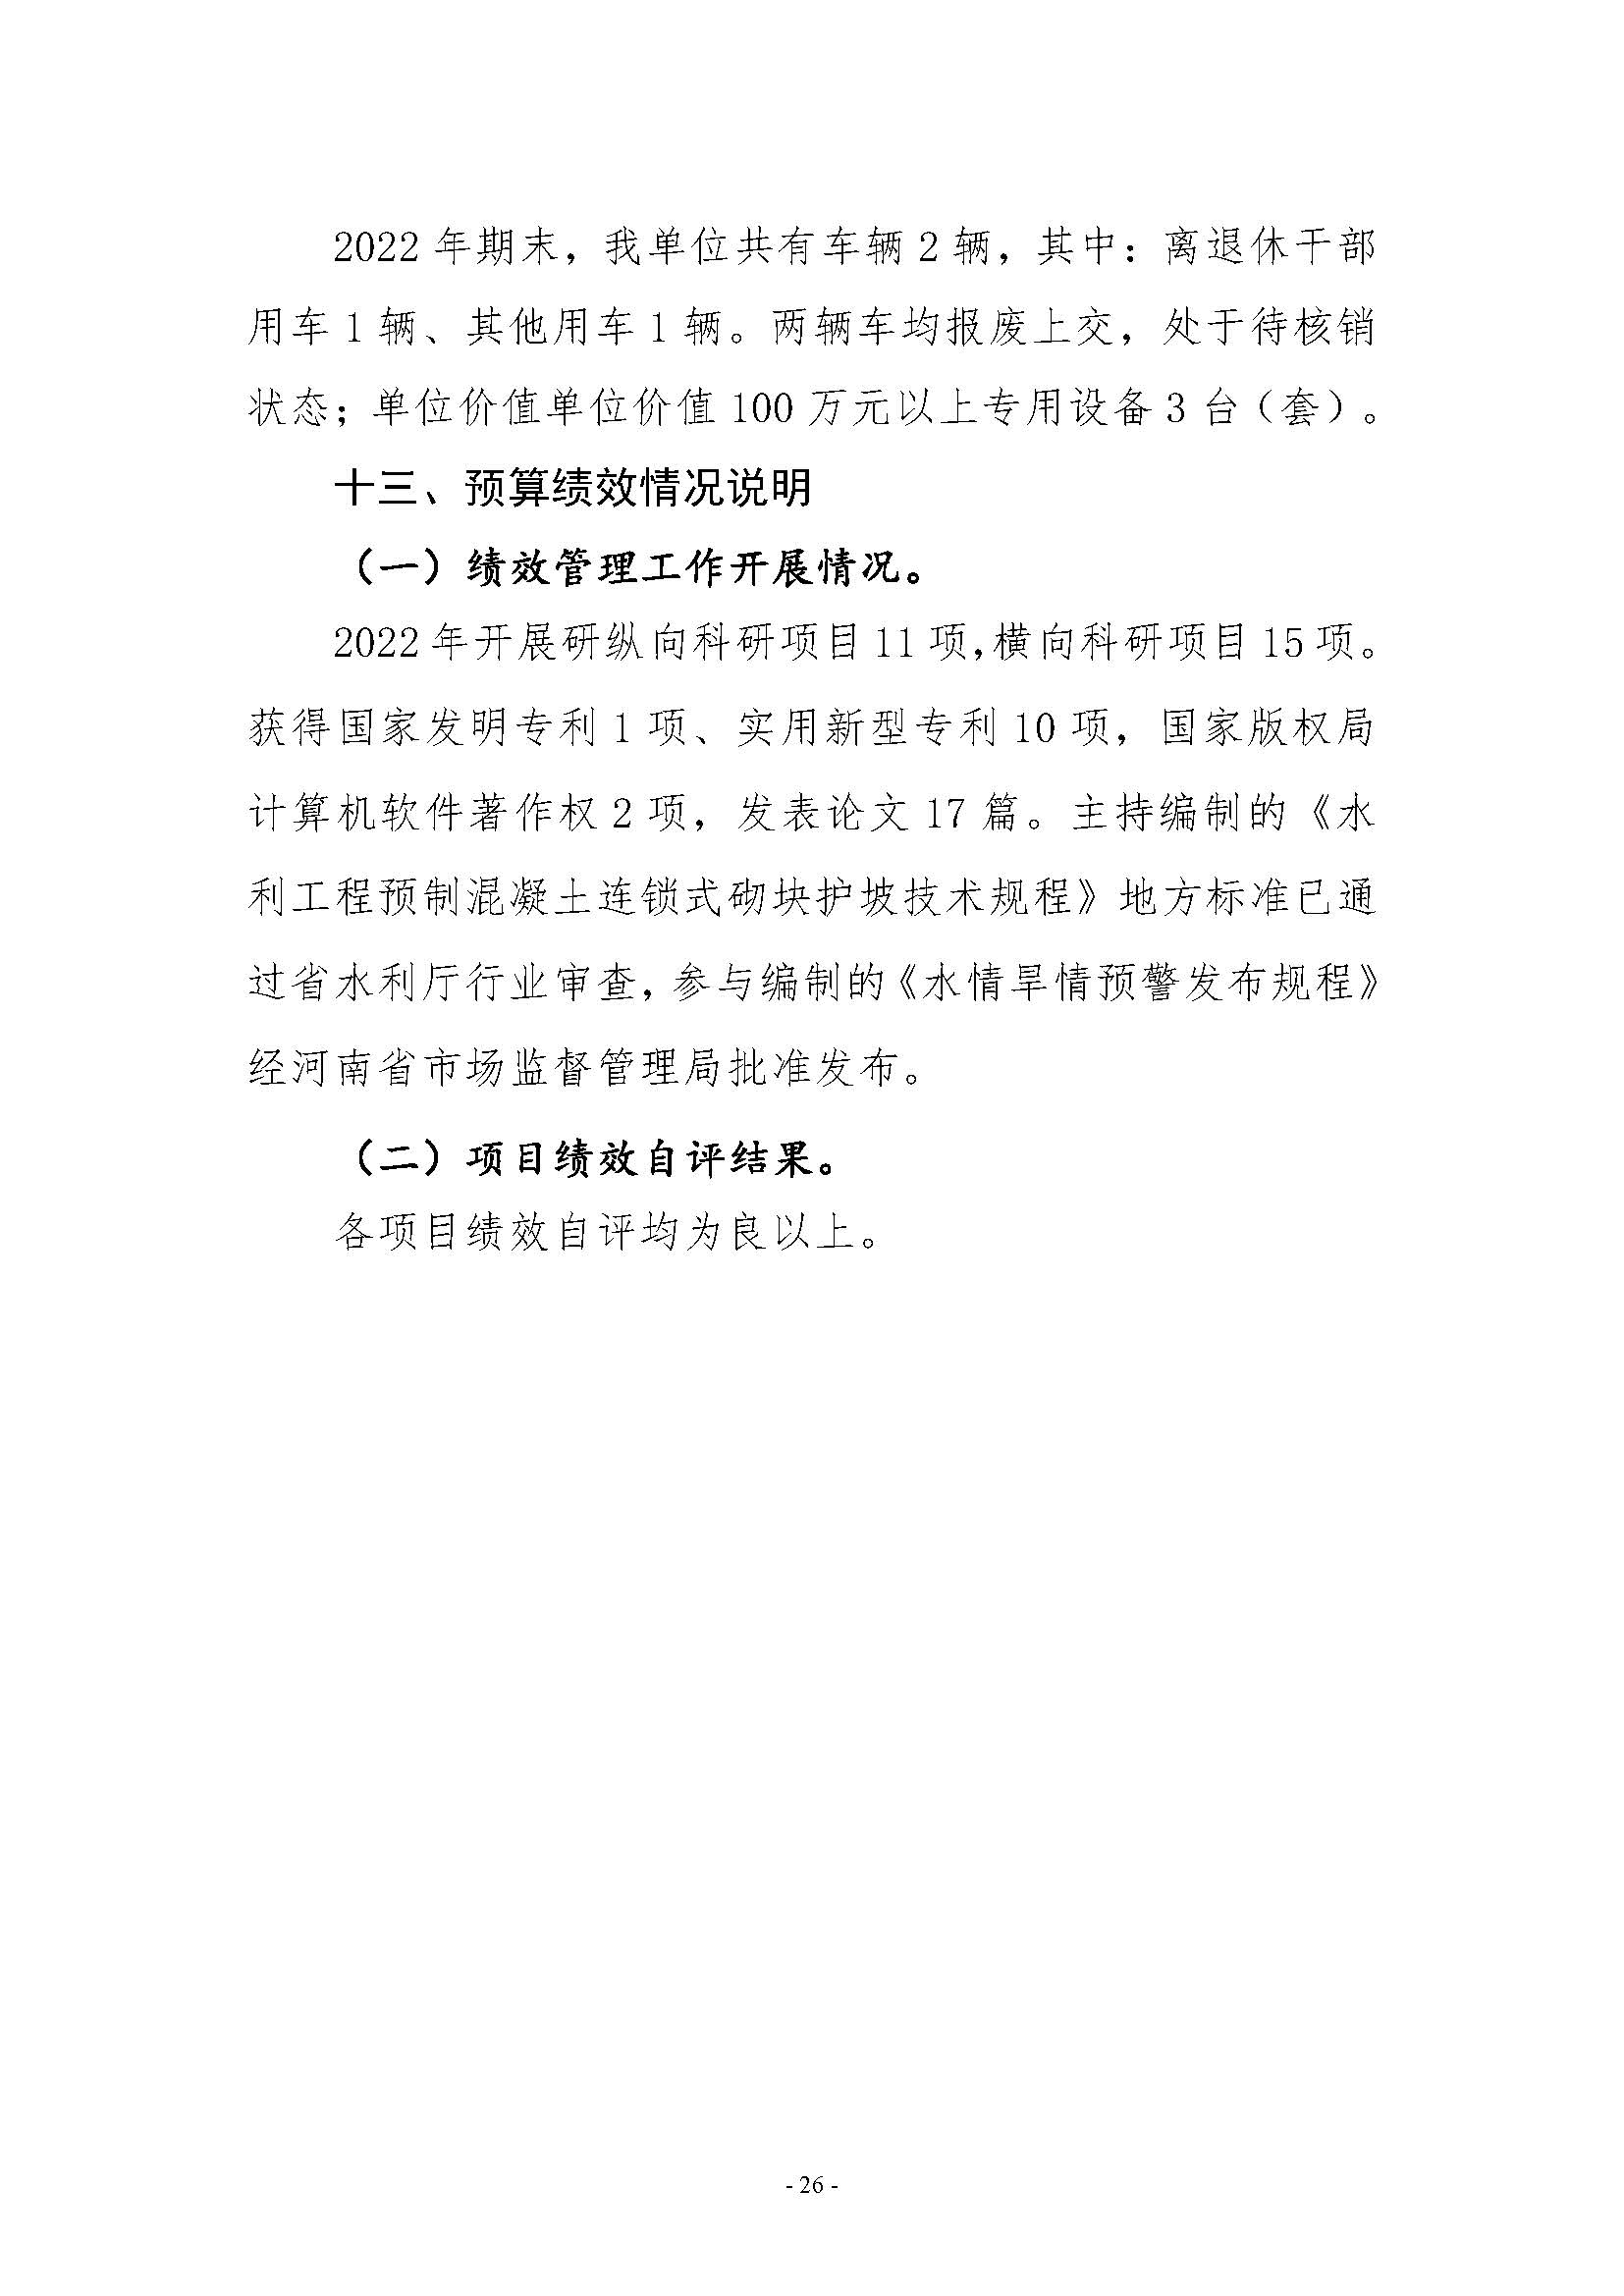 河南省水利科学研究院2022年年度省直部门决算公开(2)_页面_26.jpg